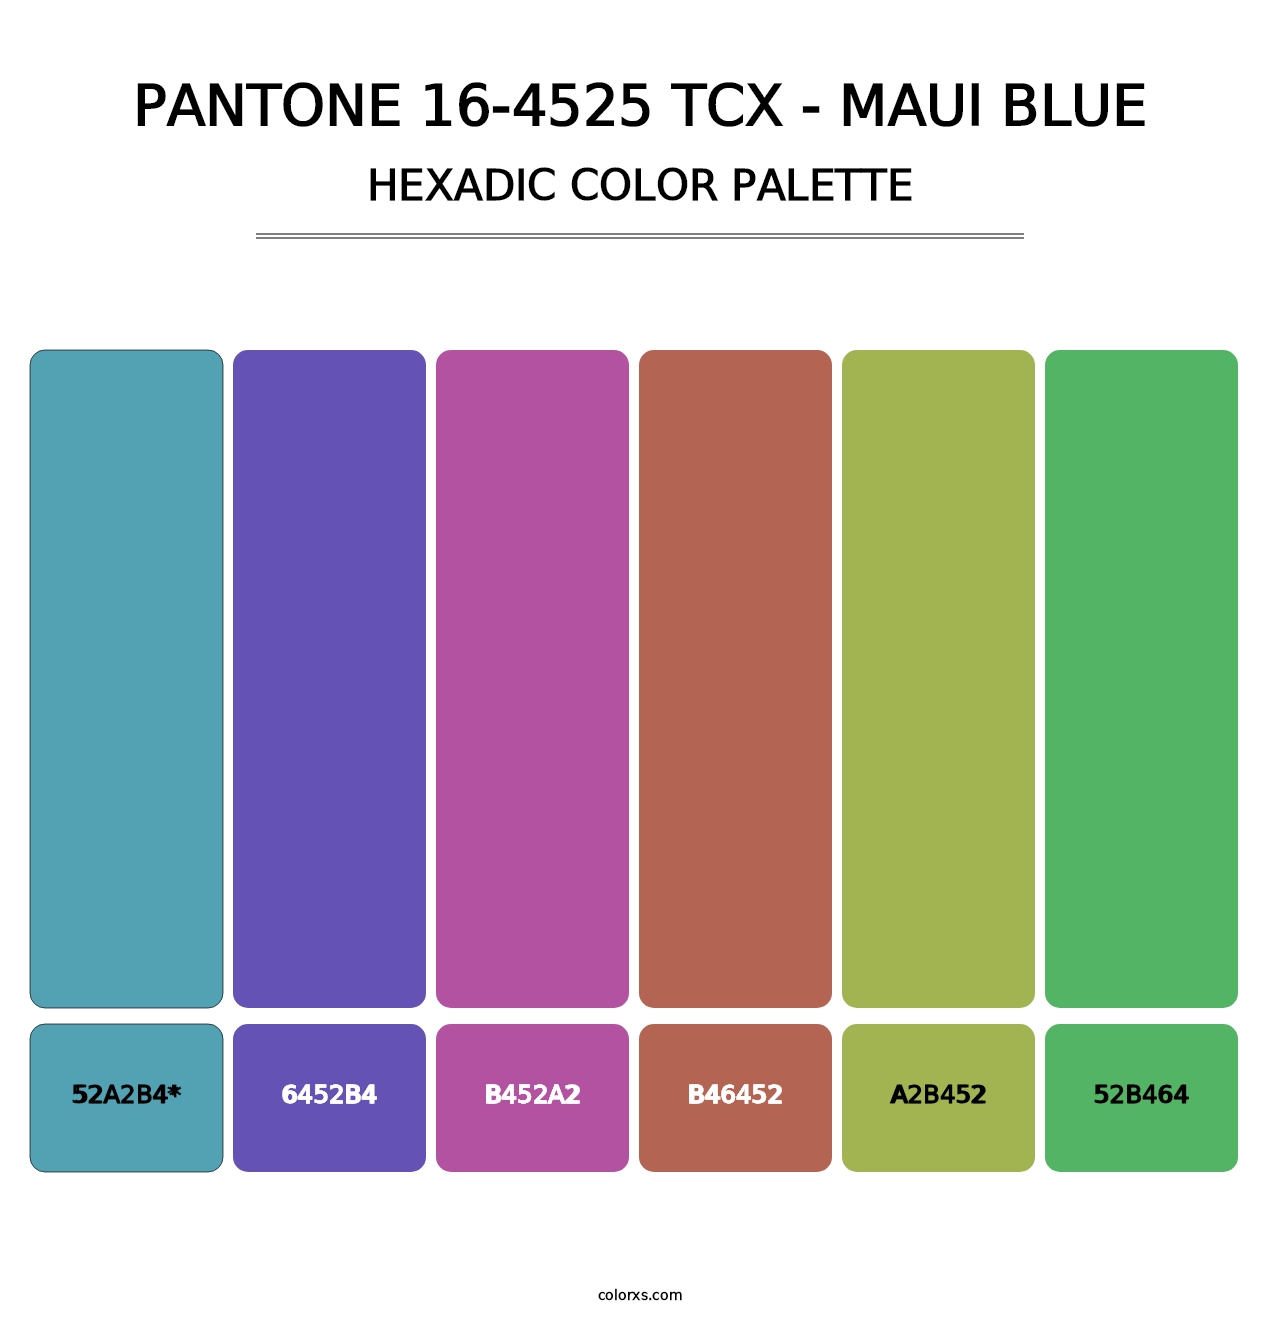 PANTONE 16-4525 TCX - Maui Blue - Hexadic Color Palette